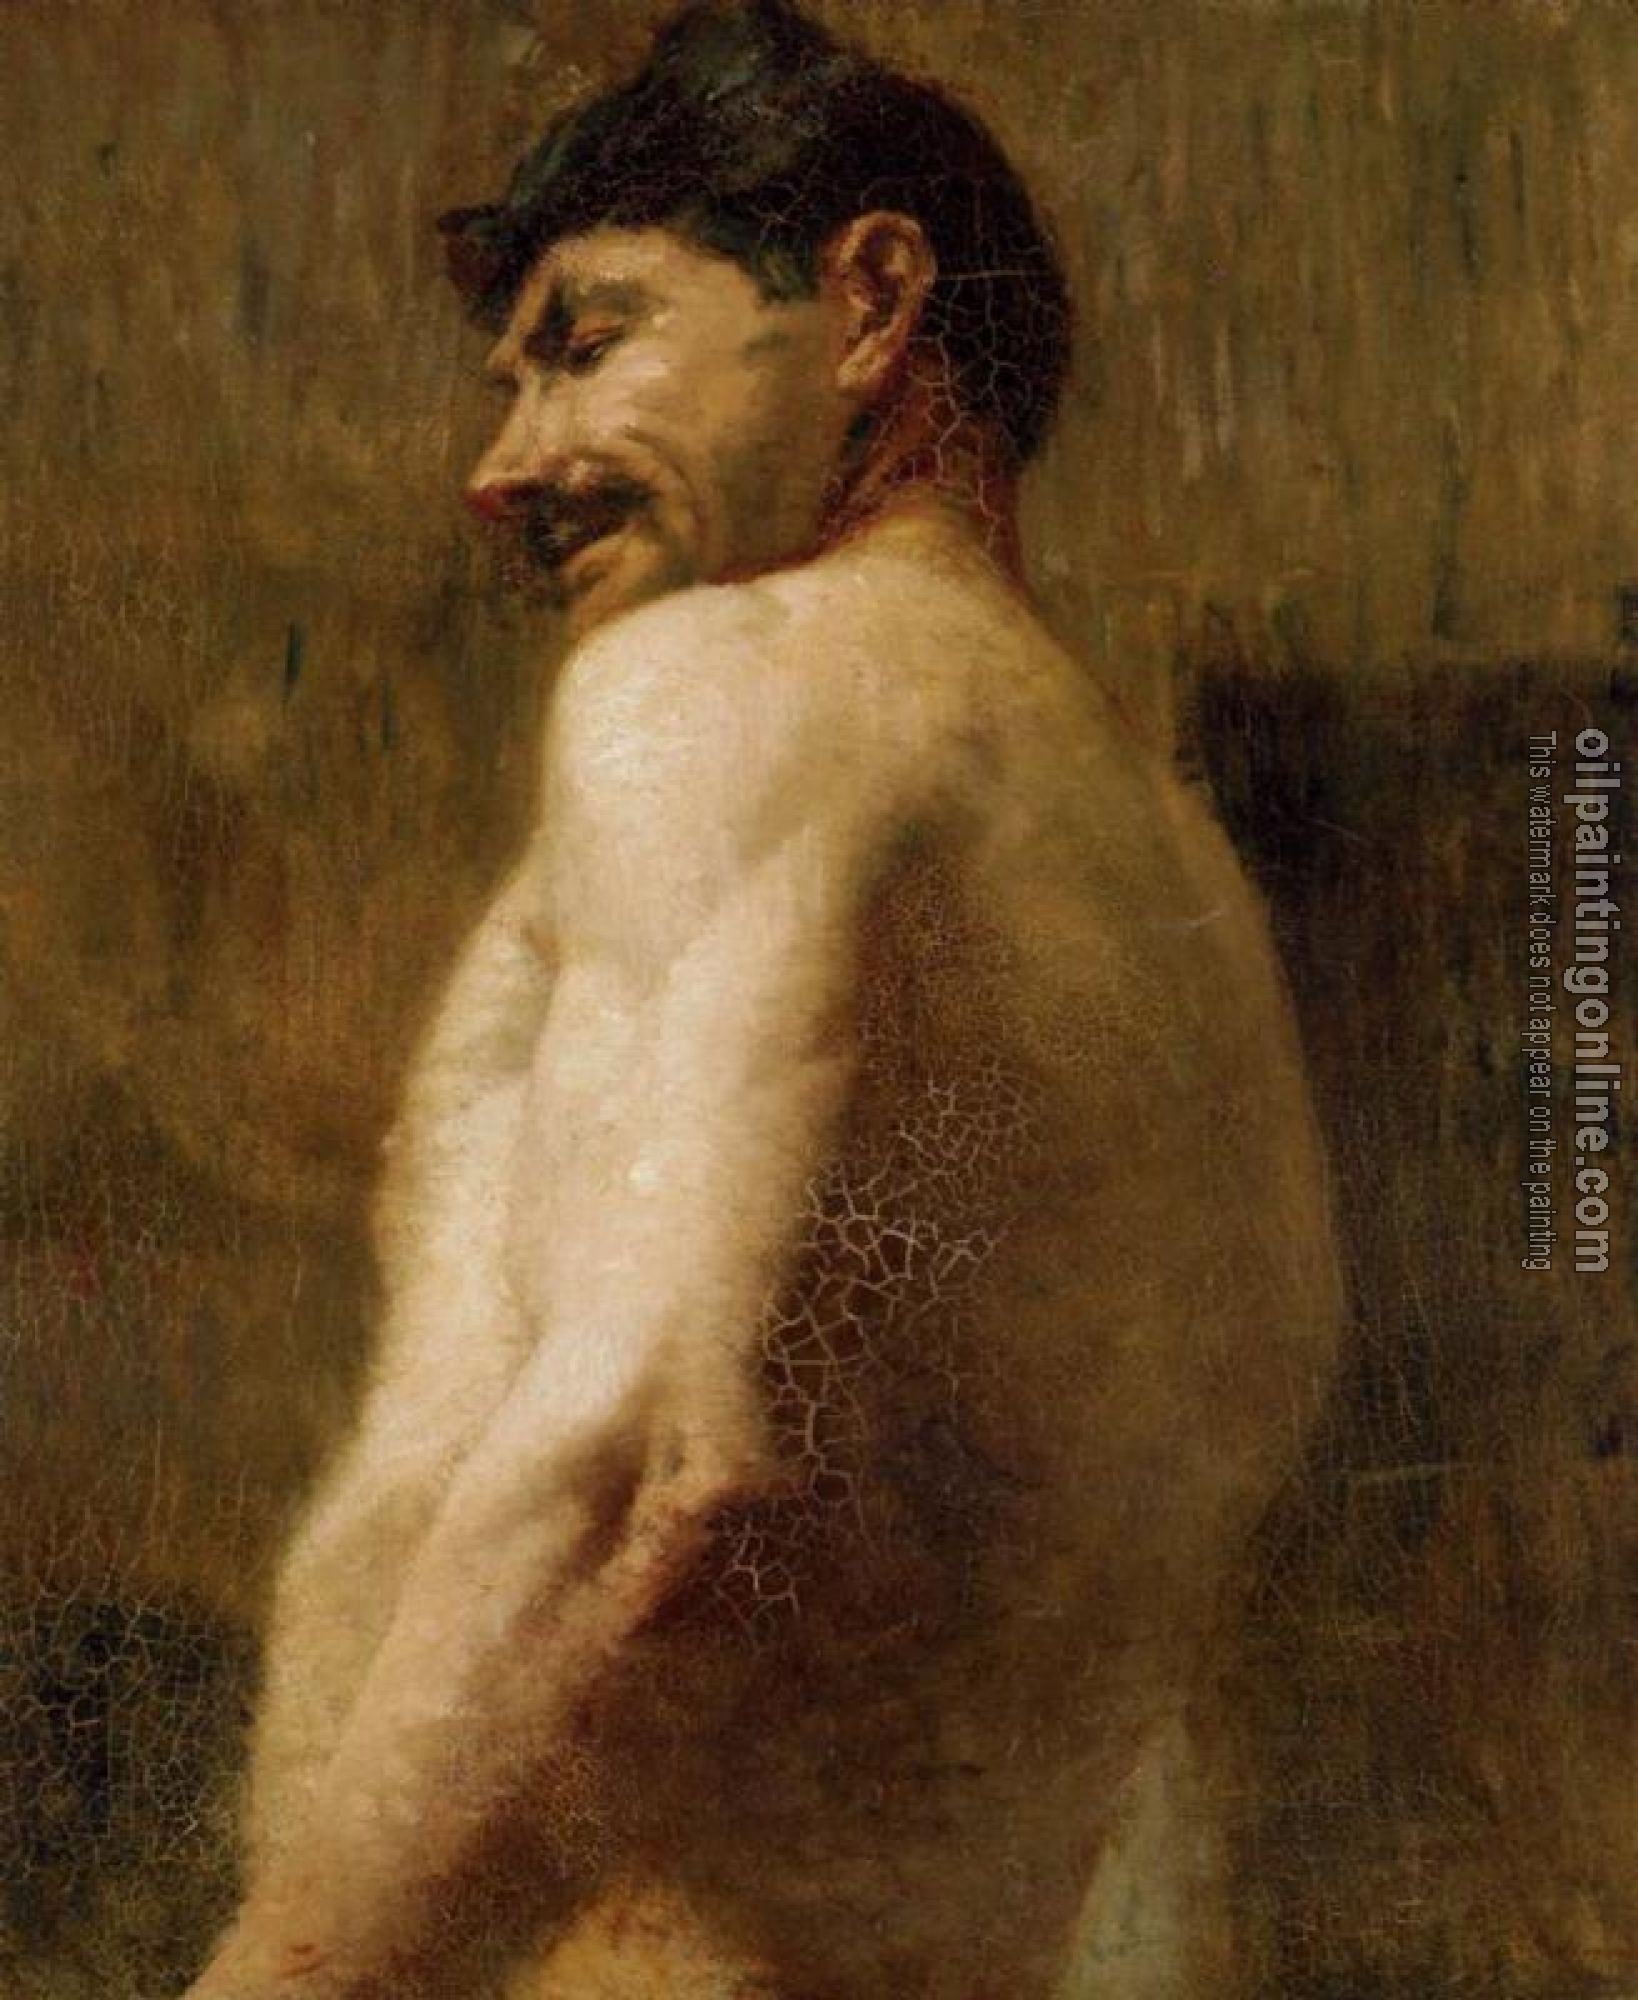 Toulouse-Lautrec, Henri de - Bust of a Nude Man